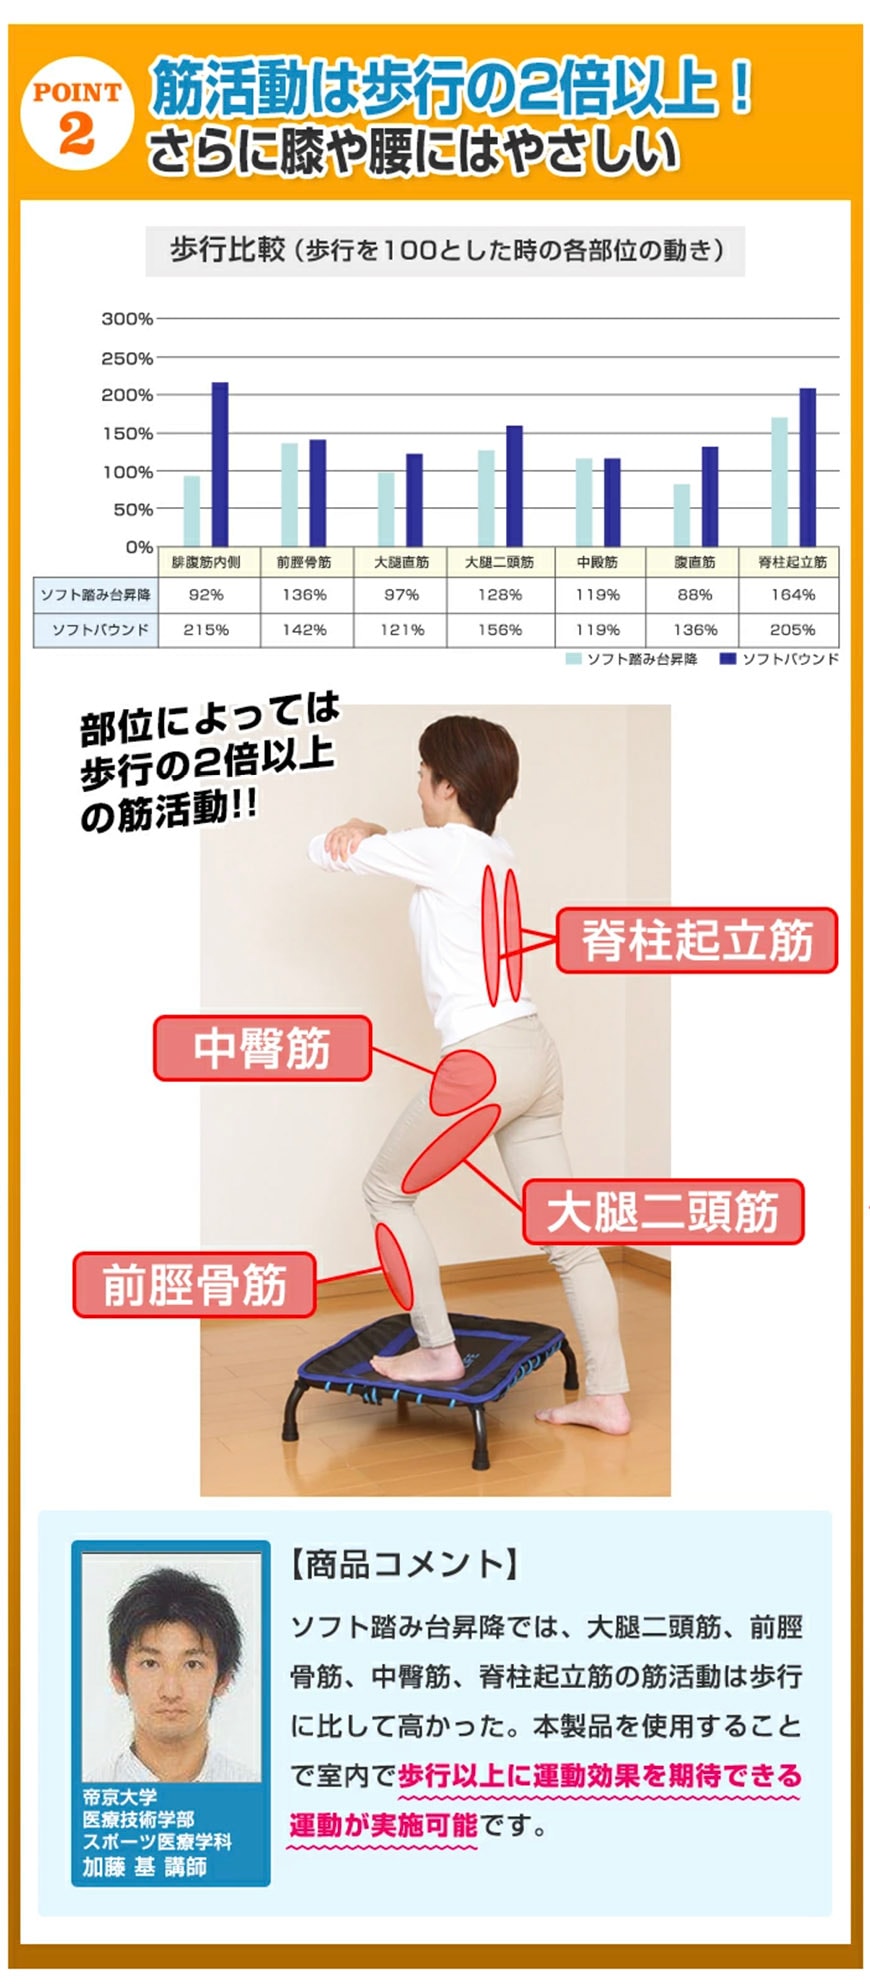 point2　筋活動は歩行の2倍以上！さらに膝や腰には優しい
	部位によっては歩行の2倍以上の筋活動！！　脊柱起立筋　中臀筋　大腿二頭筋　前脛骨筋
	ソフト踏み台昇降では、大腿二頭筋、前脛骨筋、中臀筋、脊柱起立筋の筋活動は歩行に比して高かった。本製品を使用することで室内で歩行以上に運動効果を期待できる運動が実施可能です。